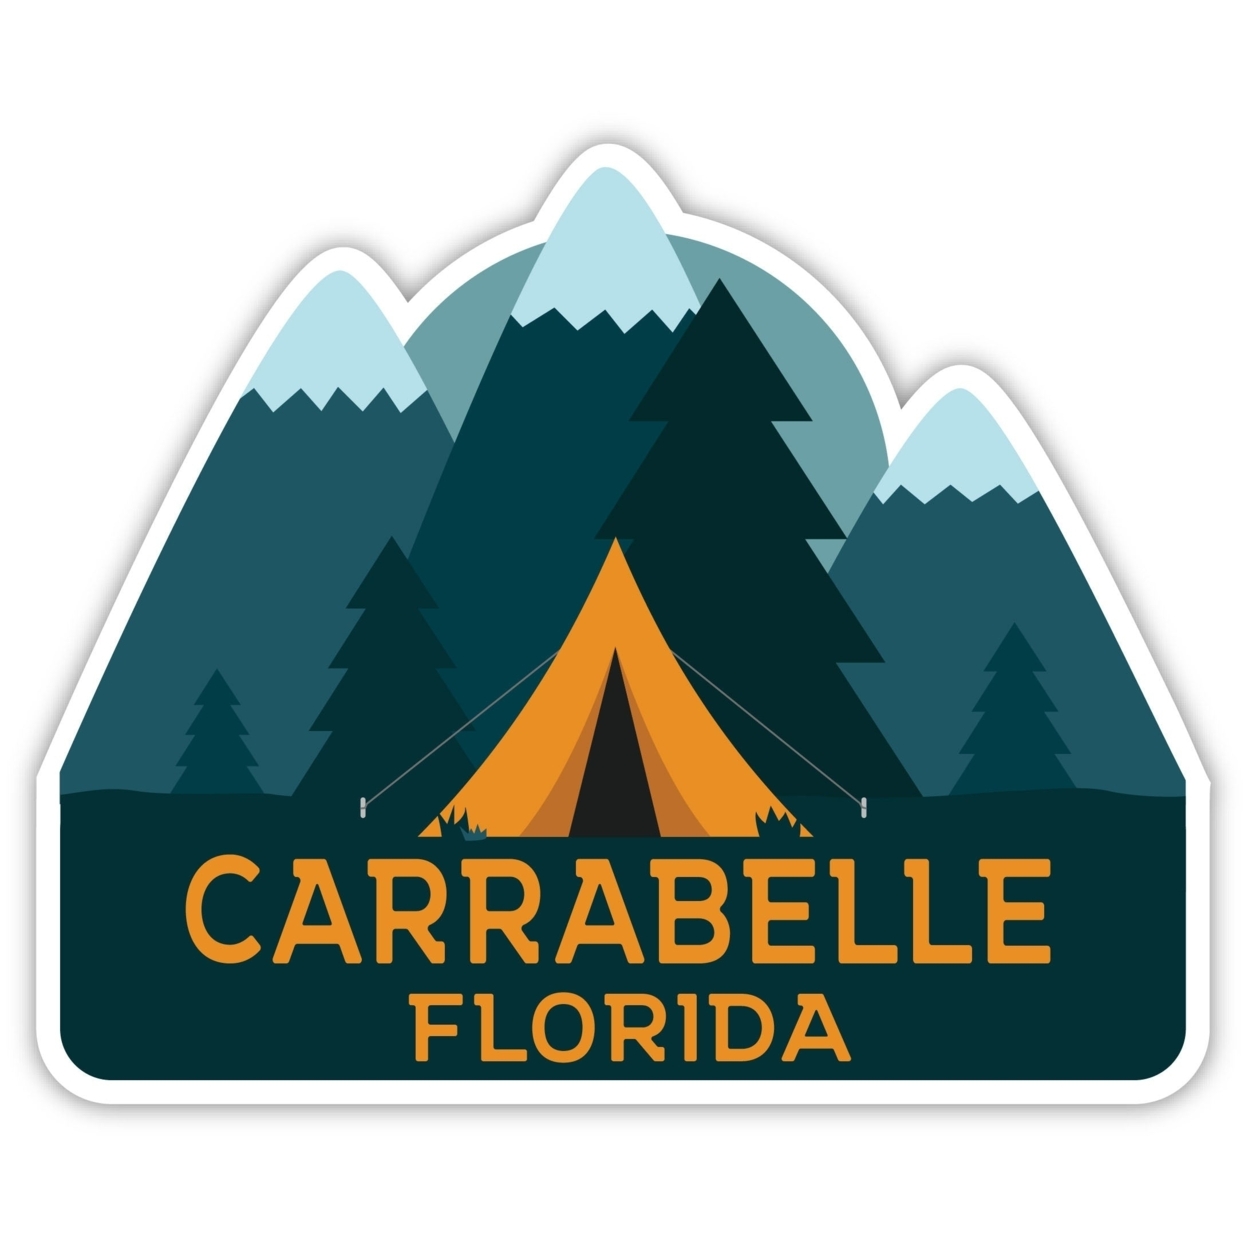 Carrabelle Florida Souvenir Decorative Stickers (Choose Theme And Size) - Single Unit, 12-Inch, Tent